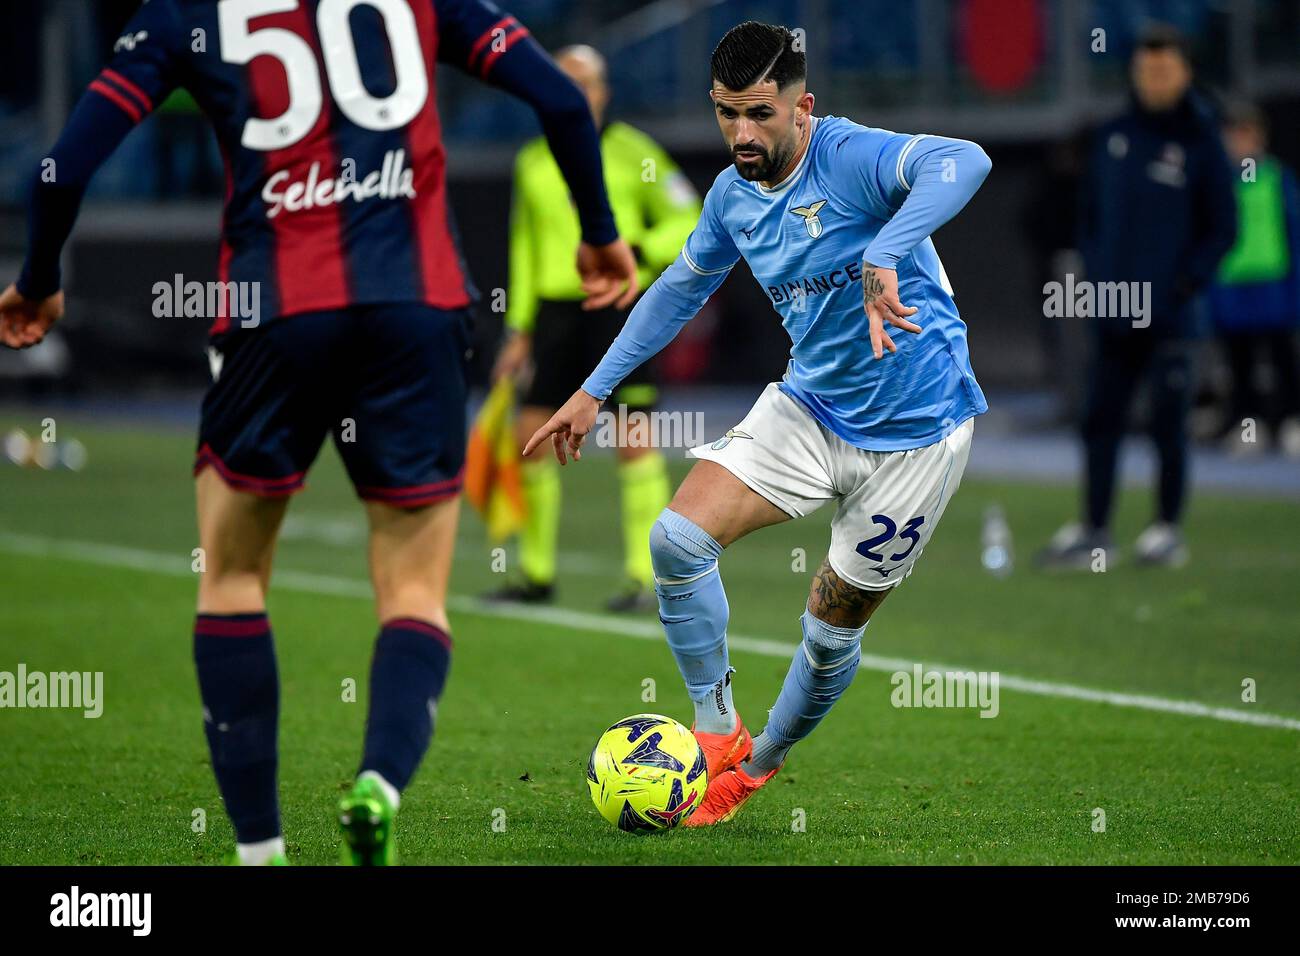 Elseid Hysaj de SS Lazio en action pendant le match de football de la coupe d'Italie entre SS Lazio et le FC de Bologne au stade Olimpico à Rome (Italie), 19 janvier Banque D'Images